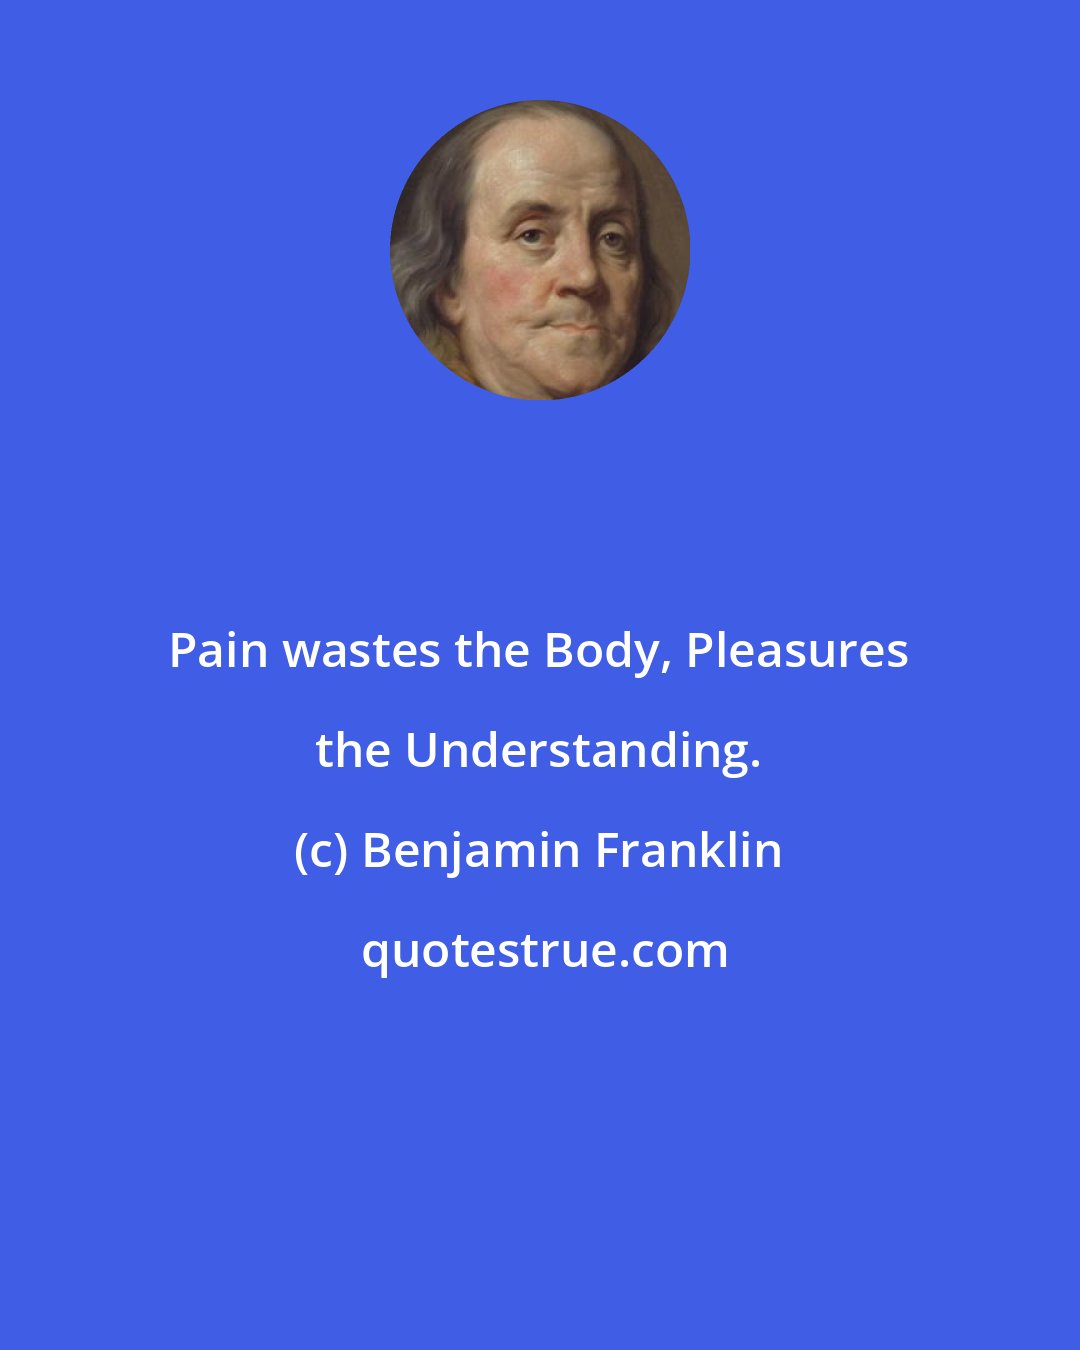 Benjamin Franklin: Pain wastes the Body, Pleasures the Understanding.